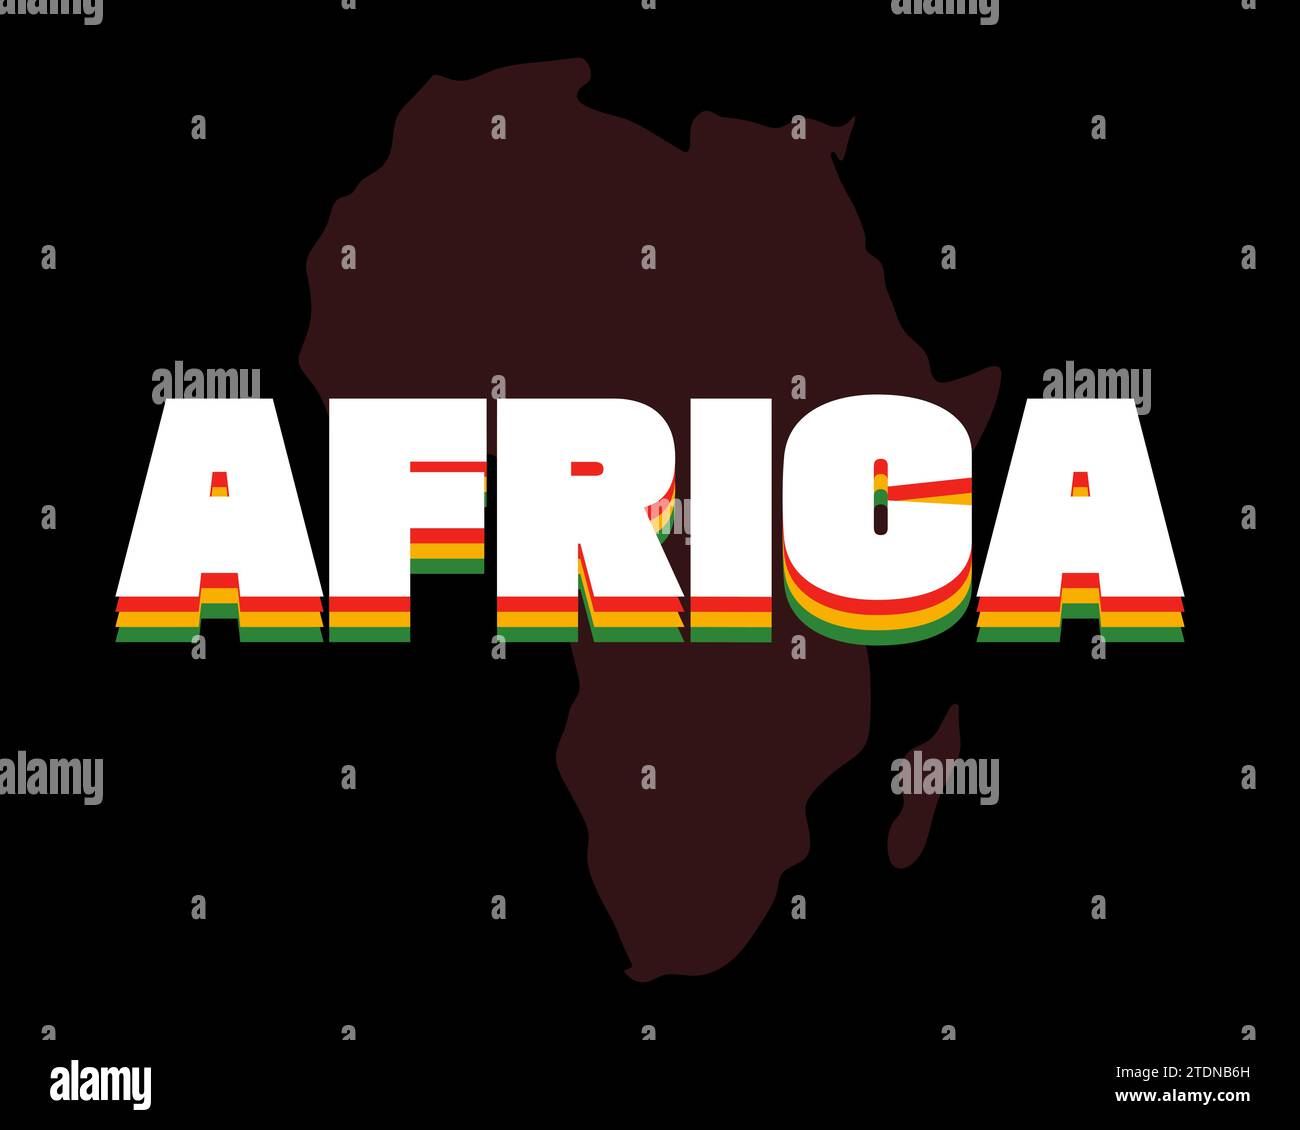 Grafisches Banner für den Monat der schwarzen Geschichte. Afroamerikanische Rechte und Kultur feiern. Moderne, kreative Grußkarte. Afrika-Silhouette und Inschrift in rot-gelb-grünen Afro-Flaggenfarben. Vektor-EPS Stock Vektor